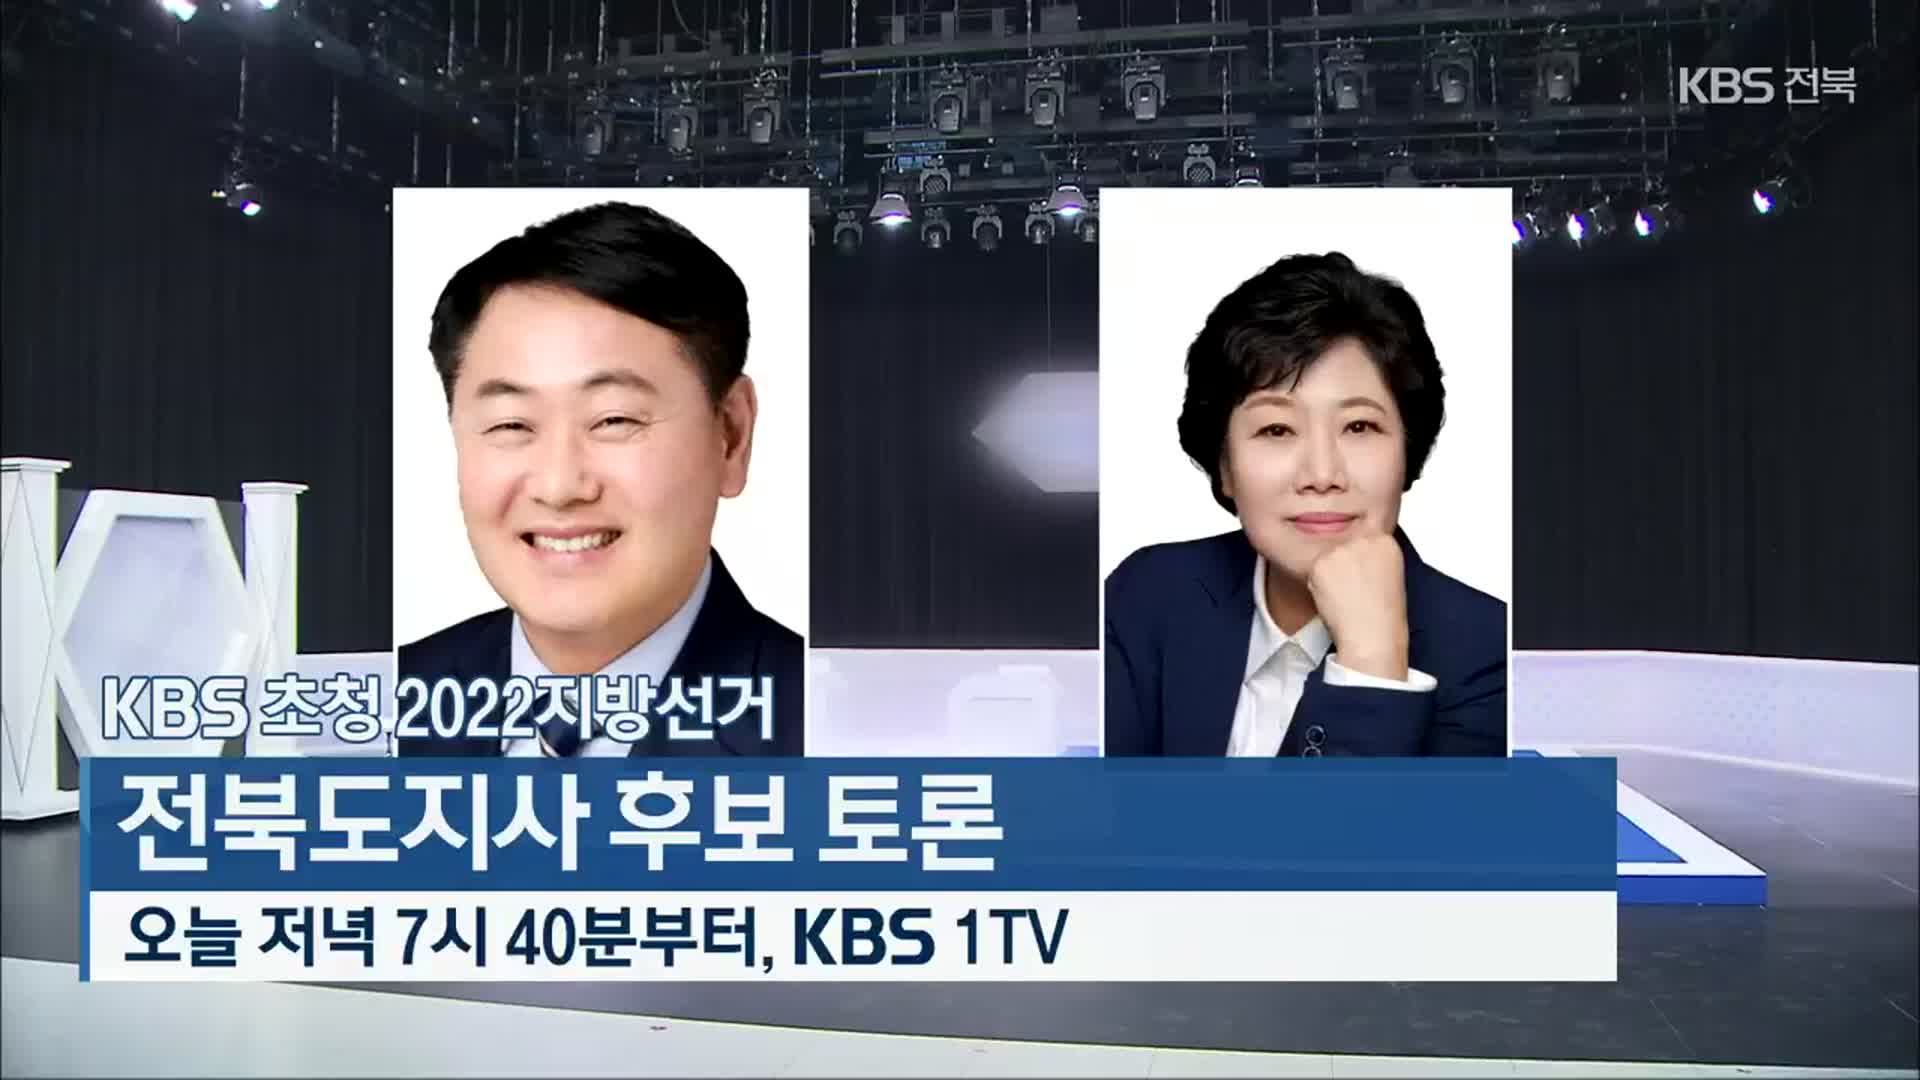 [KBS초청 2022 지방선거] 전북도지사 후보 토론 잠시 뒤 7시 40분 방송